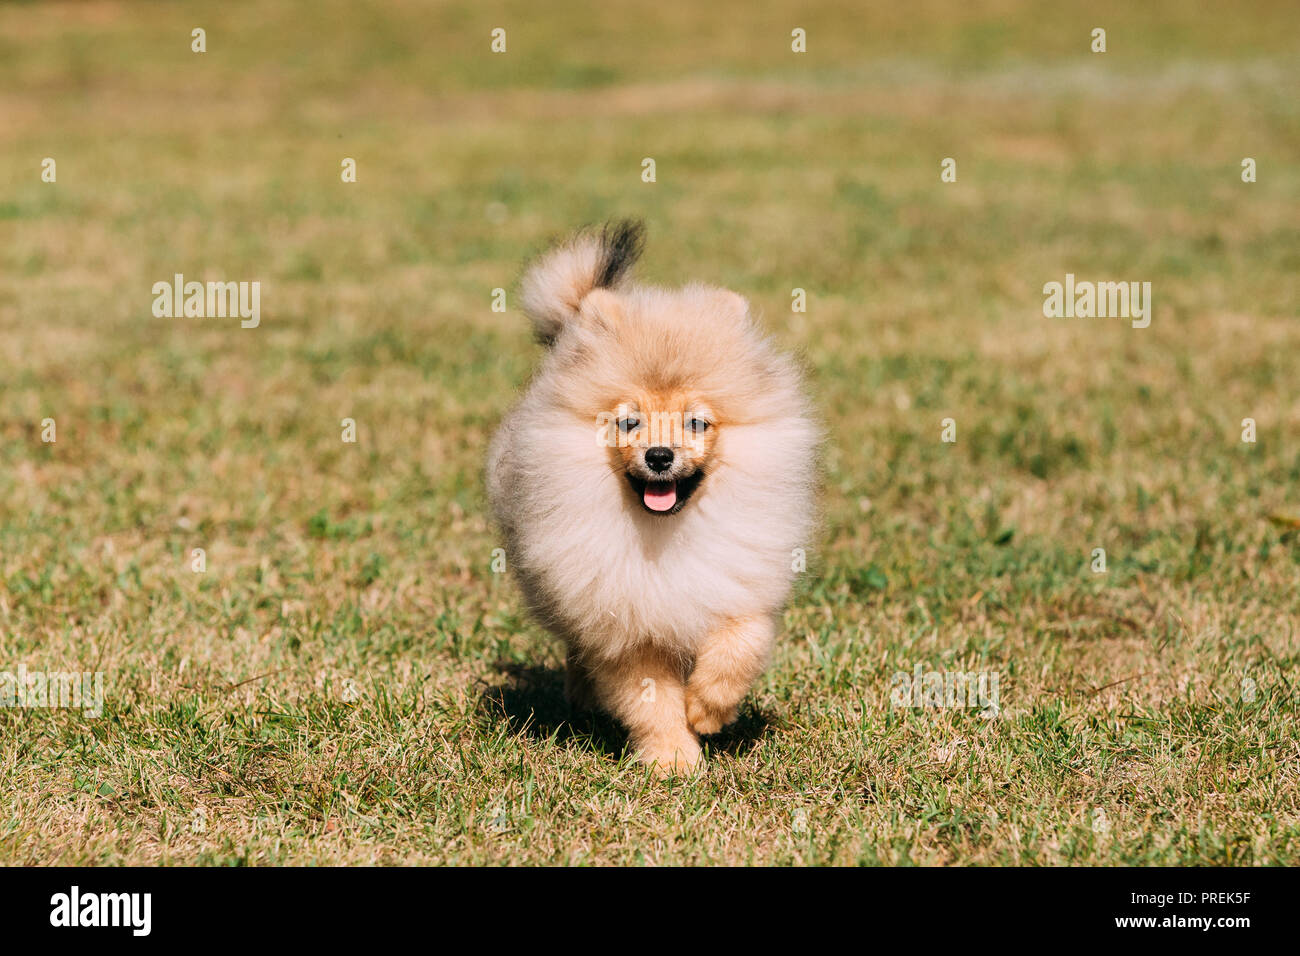 Junge gerne weiße Welpen Pomeranian Spitz Welpe Hund laufen Outdoor im grünen Gras. Stockfoto